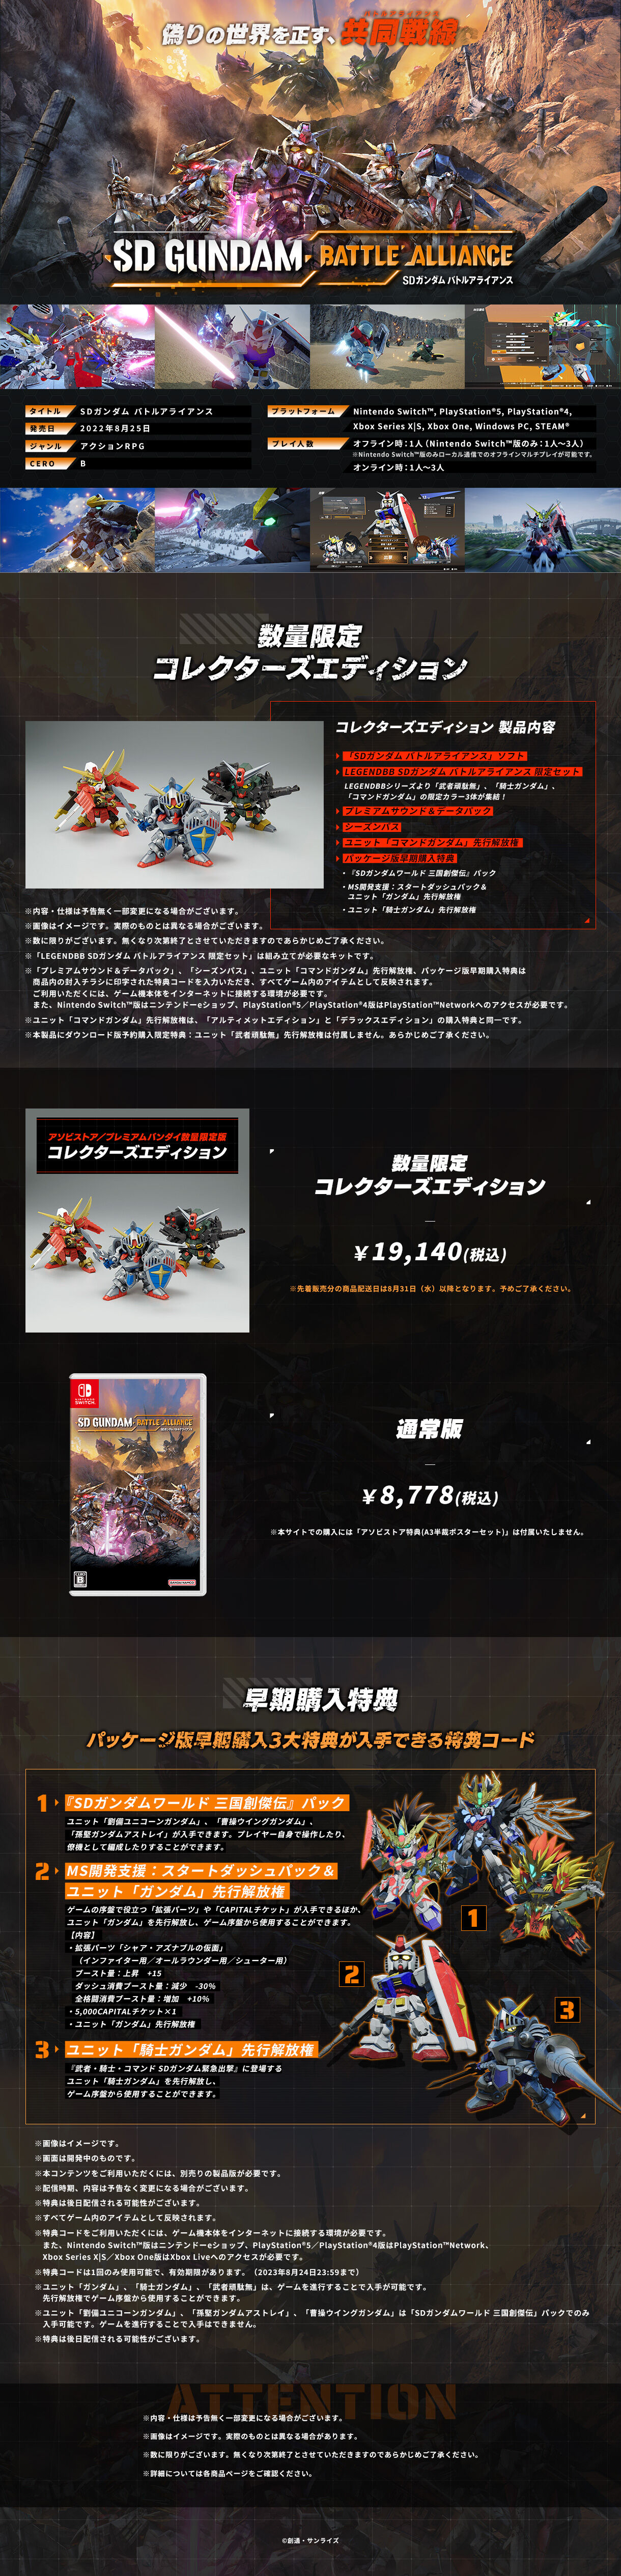 【カテゴリ】 Nintendo Switch - switch版 SDガンダム バトルアライアンス コレクターズエディションの通販 by K